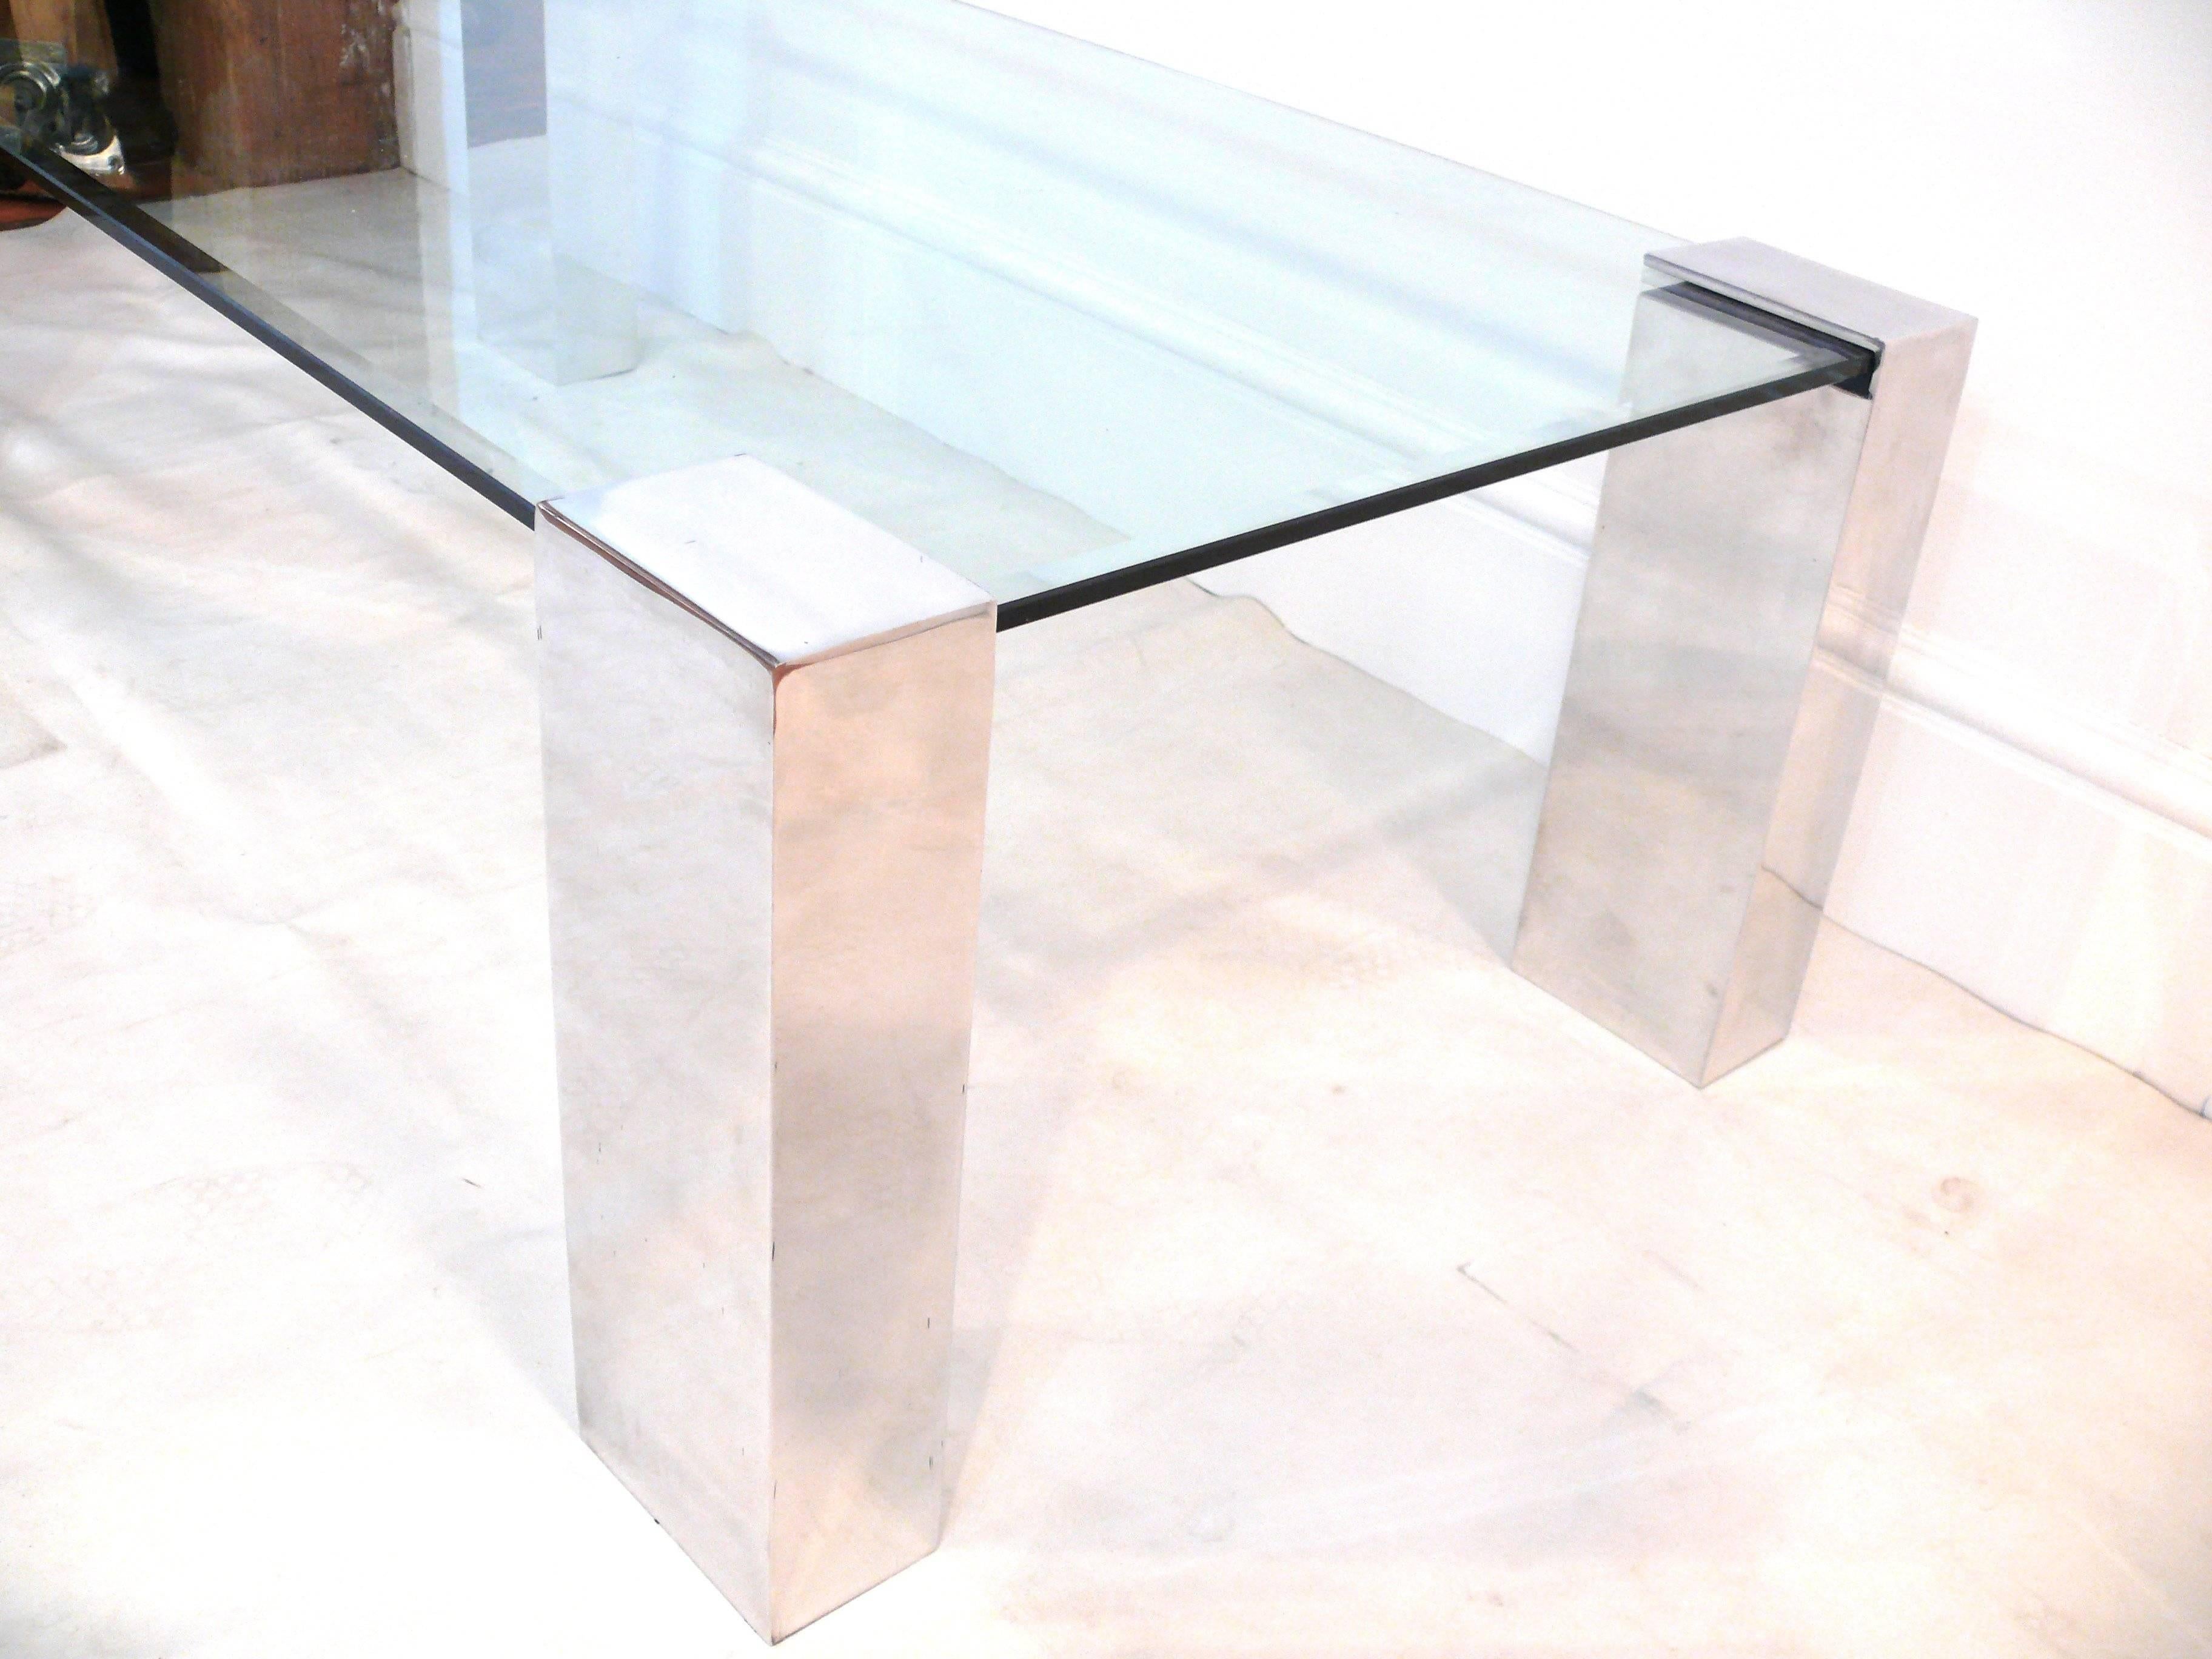 Table basse de style Pace avec des pieds rectangulaires en aluminium poli et un nouveau plateau en verre. Convient à de nombreux plateaux en verre de tailles différentes. Les jambes mesurent chacune 3